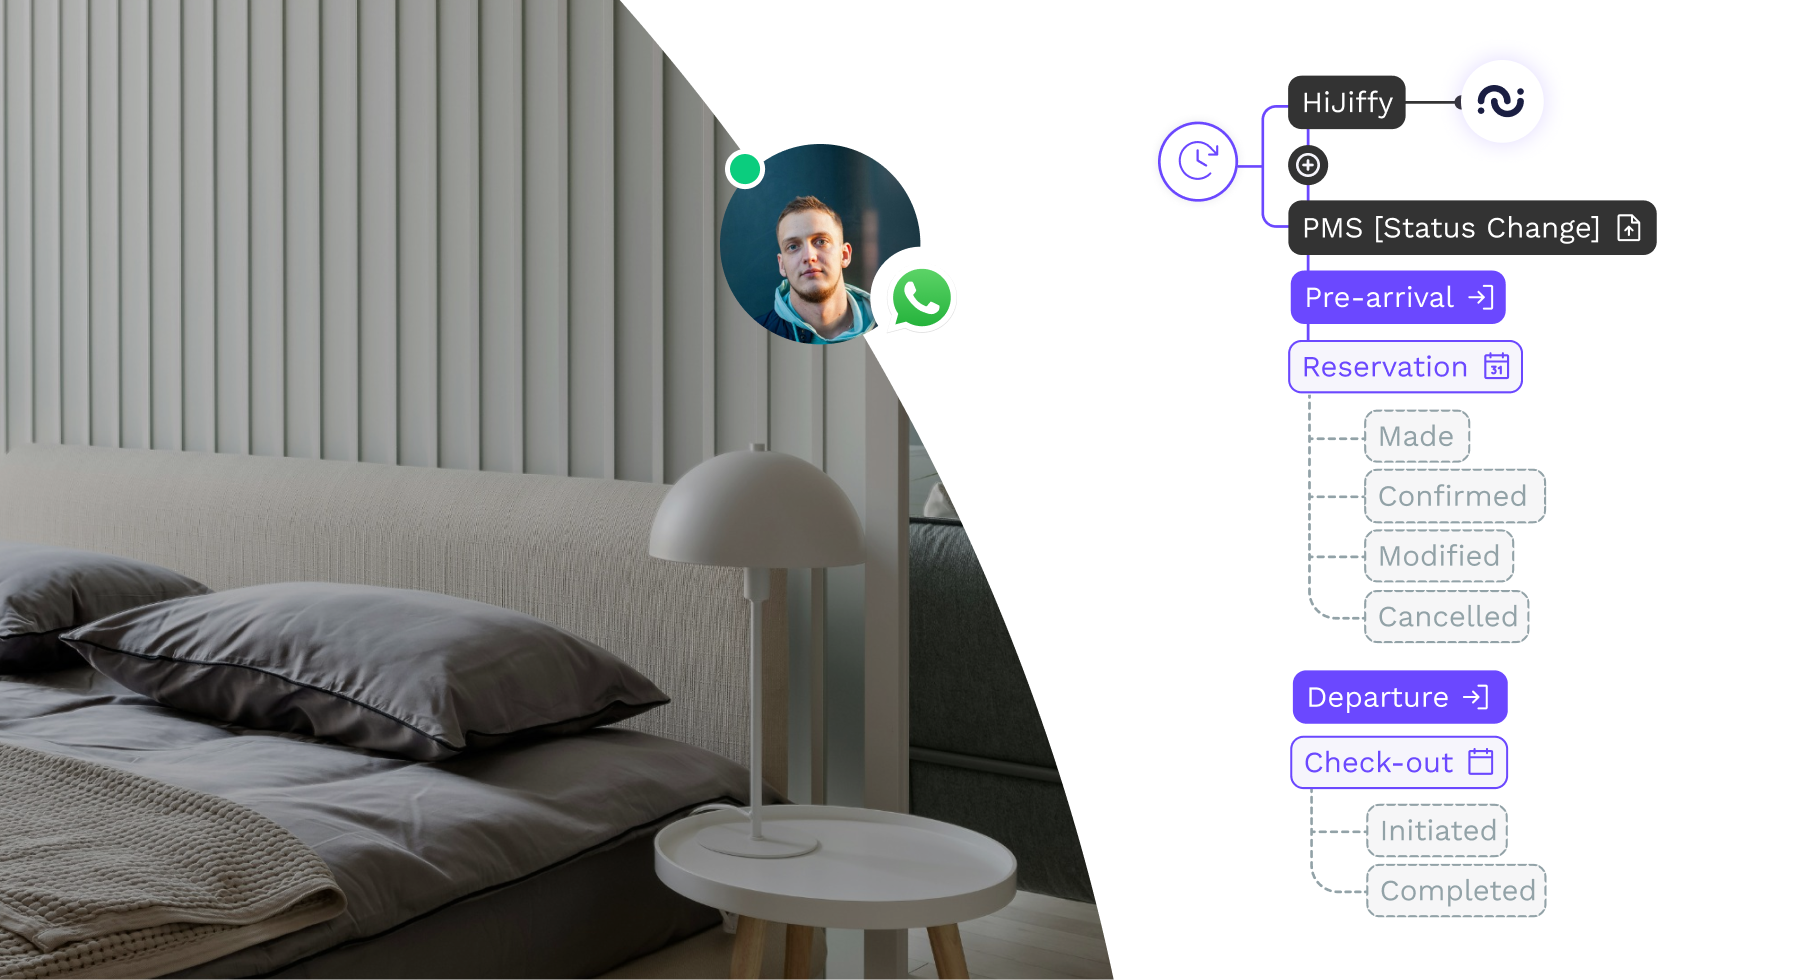 HiJiffy lance un service de messagerie client hautement personnalisé, basé sur les mises à jour en temps réel du PMS